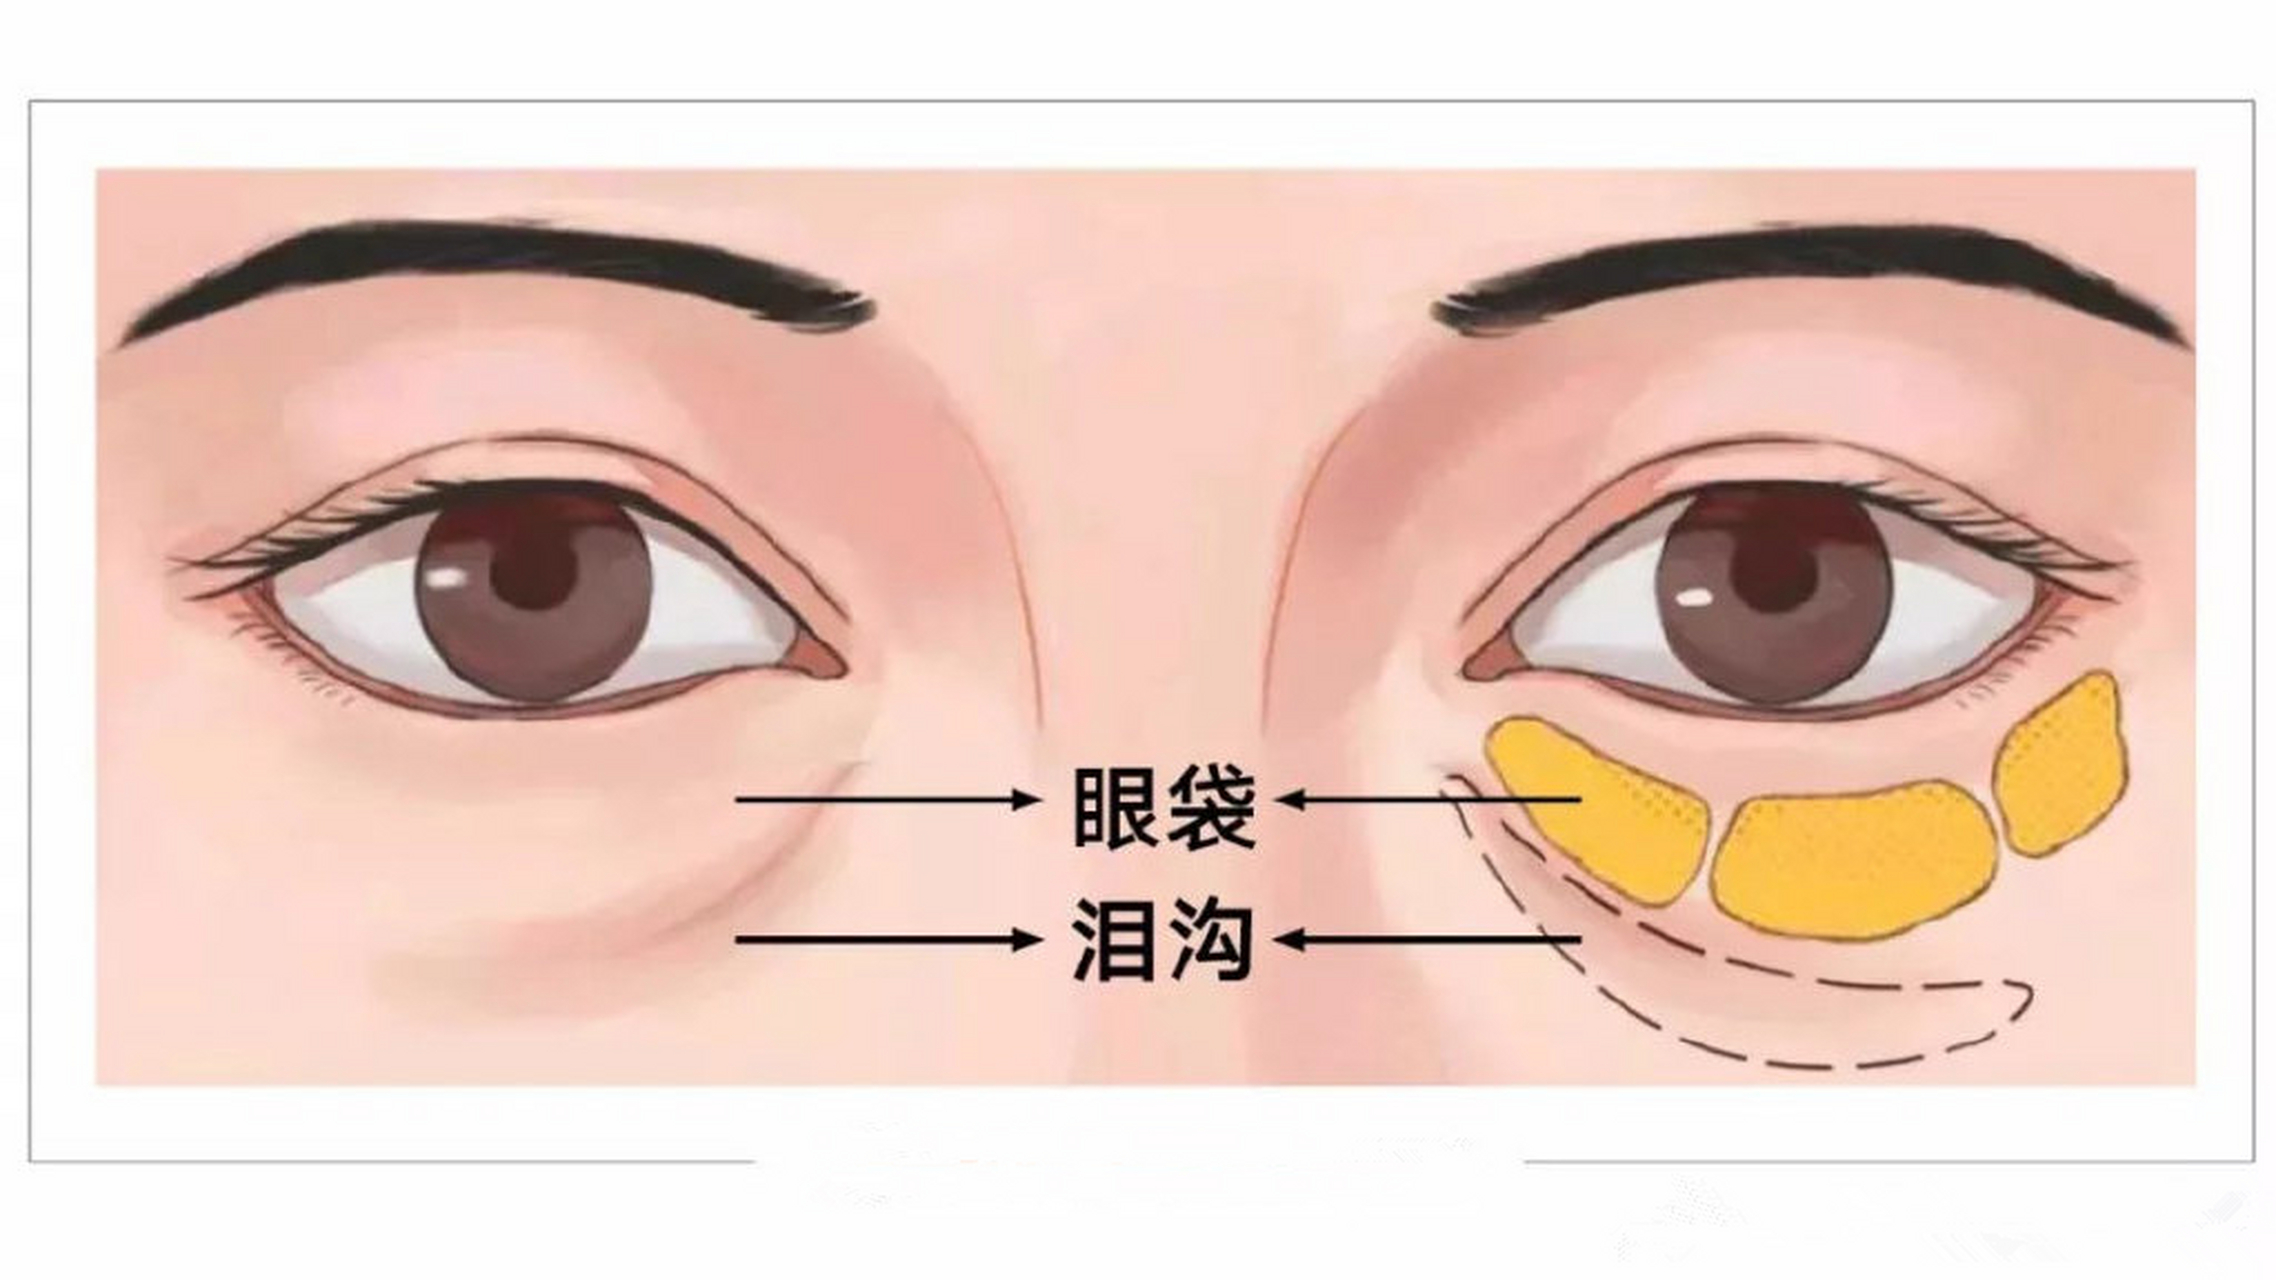 最简单的检测方法:从侧面看,眼袋是凸出感,泪沟则是凹陷